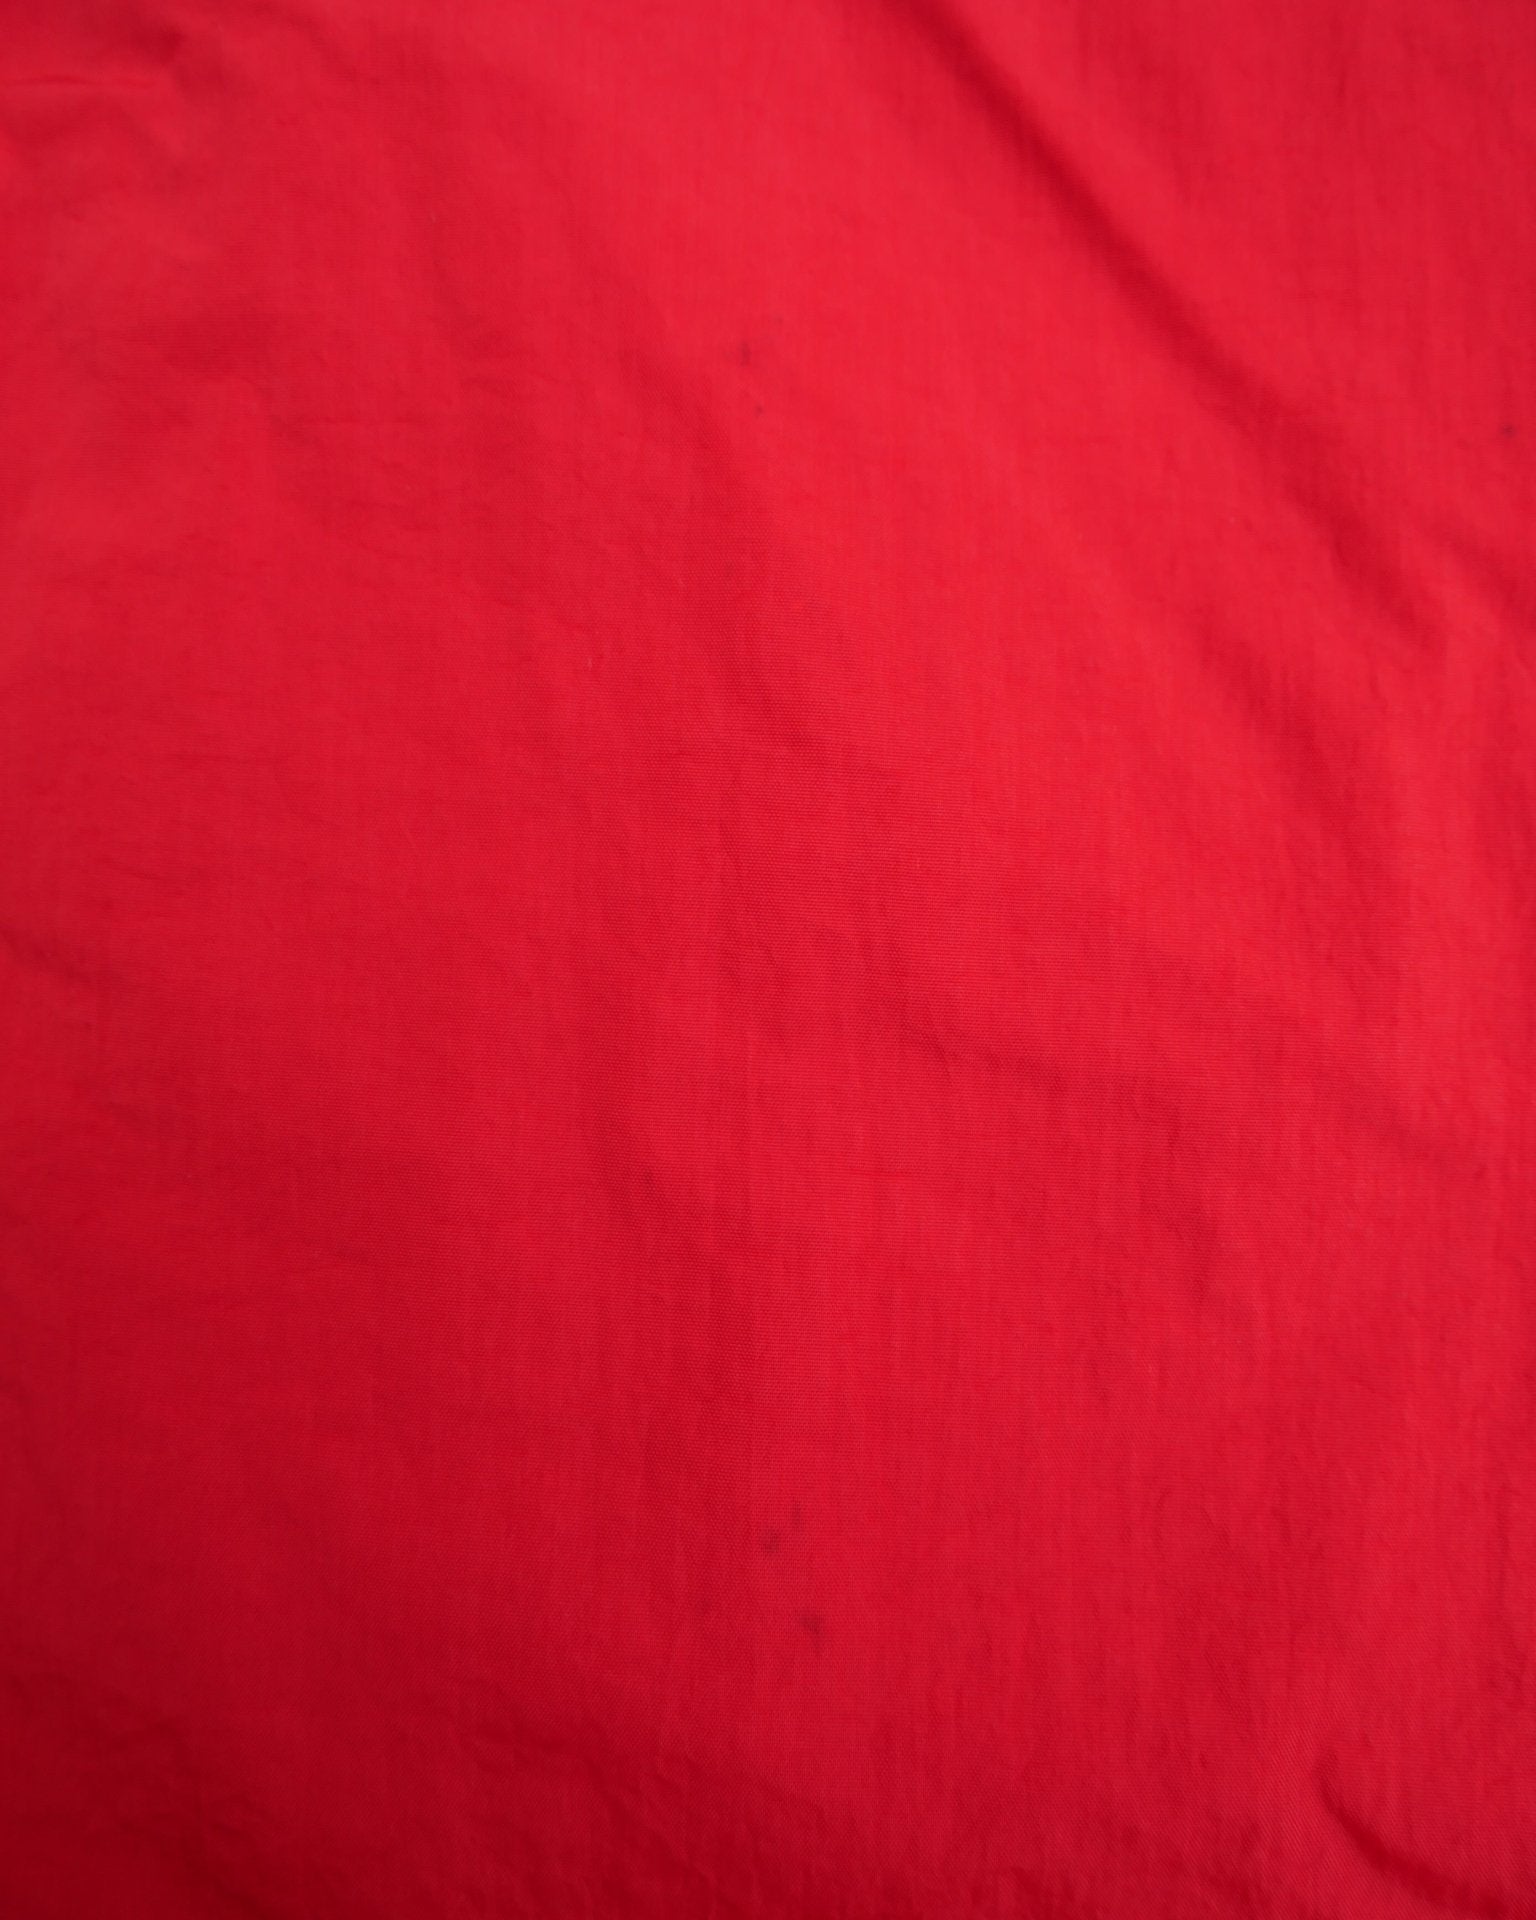 nike embroidered Logo red oversized Half Zip Windbreaker Jacke - Peeces